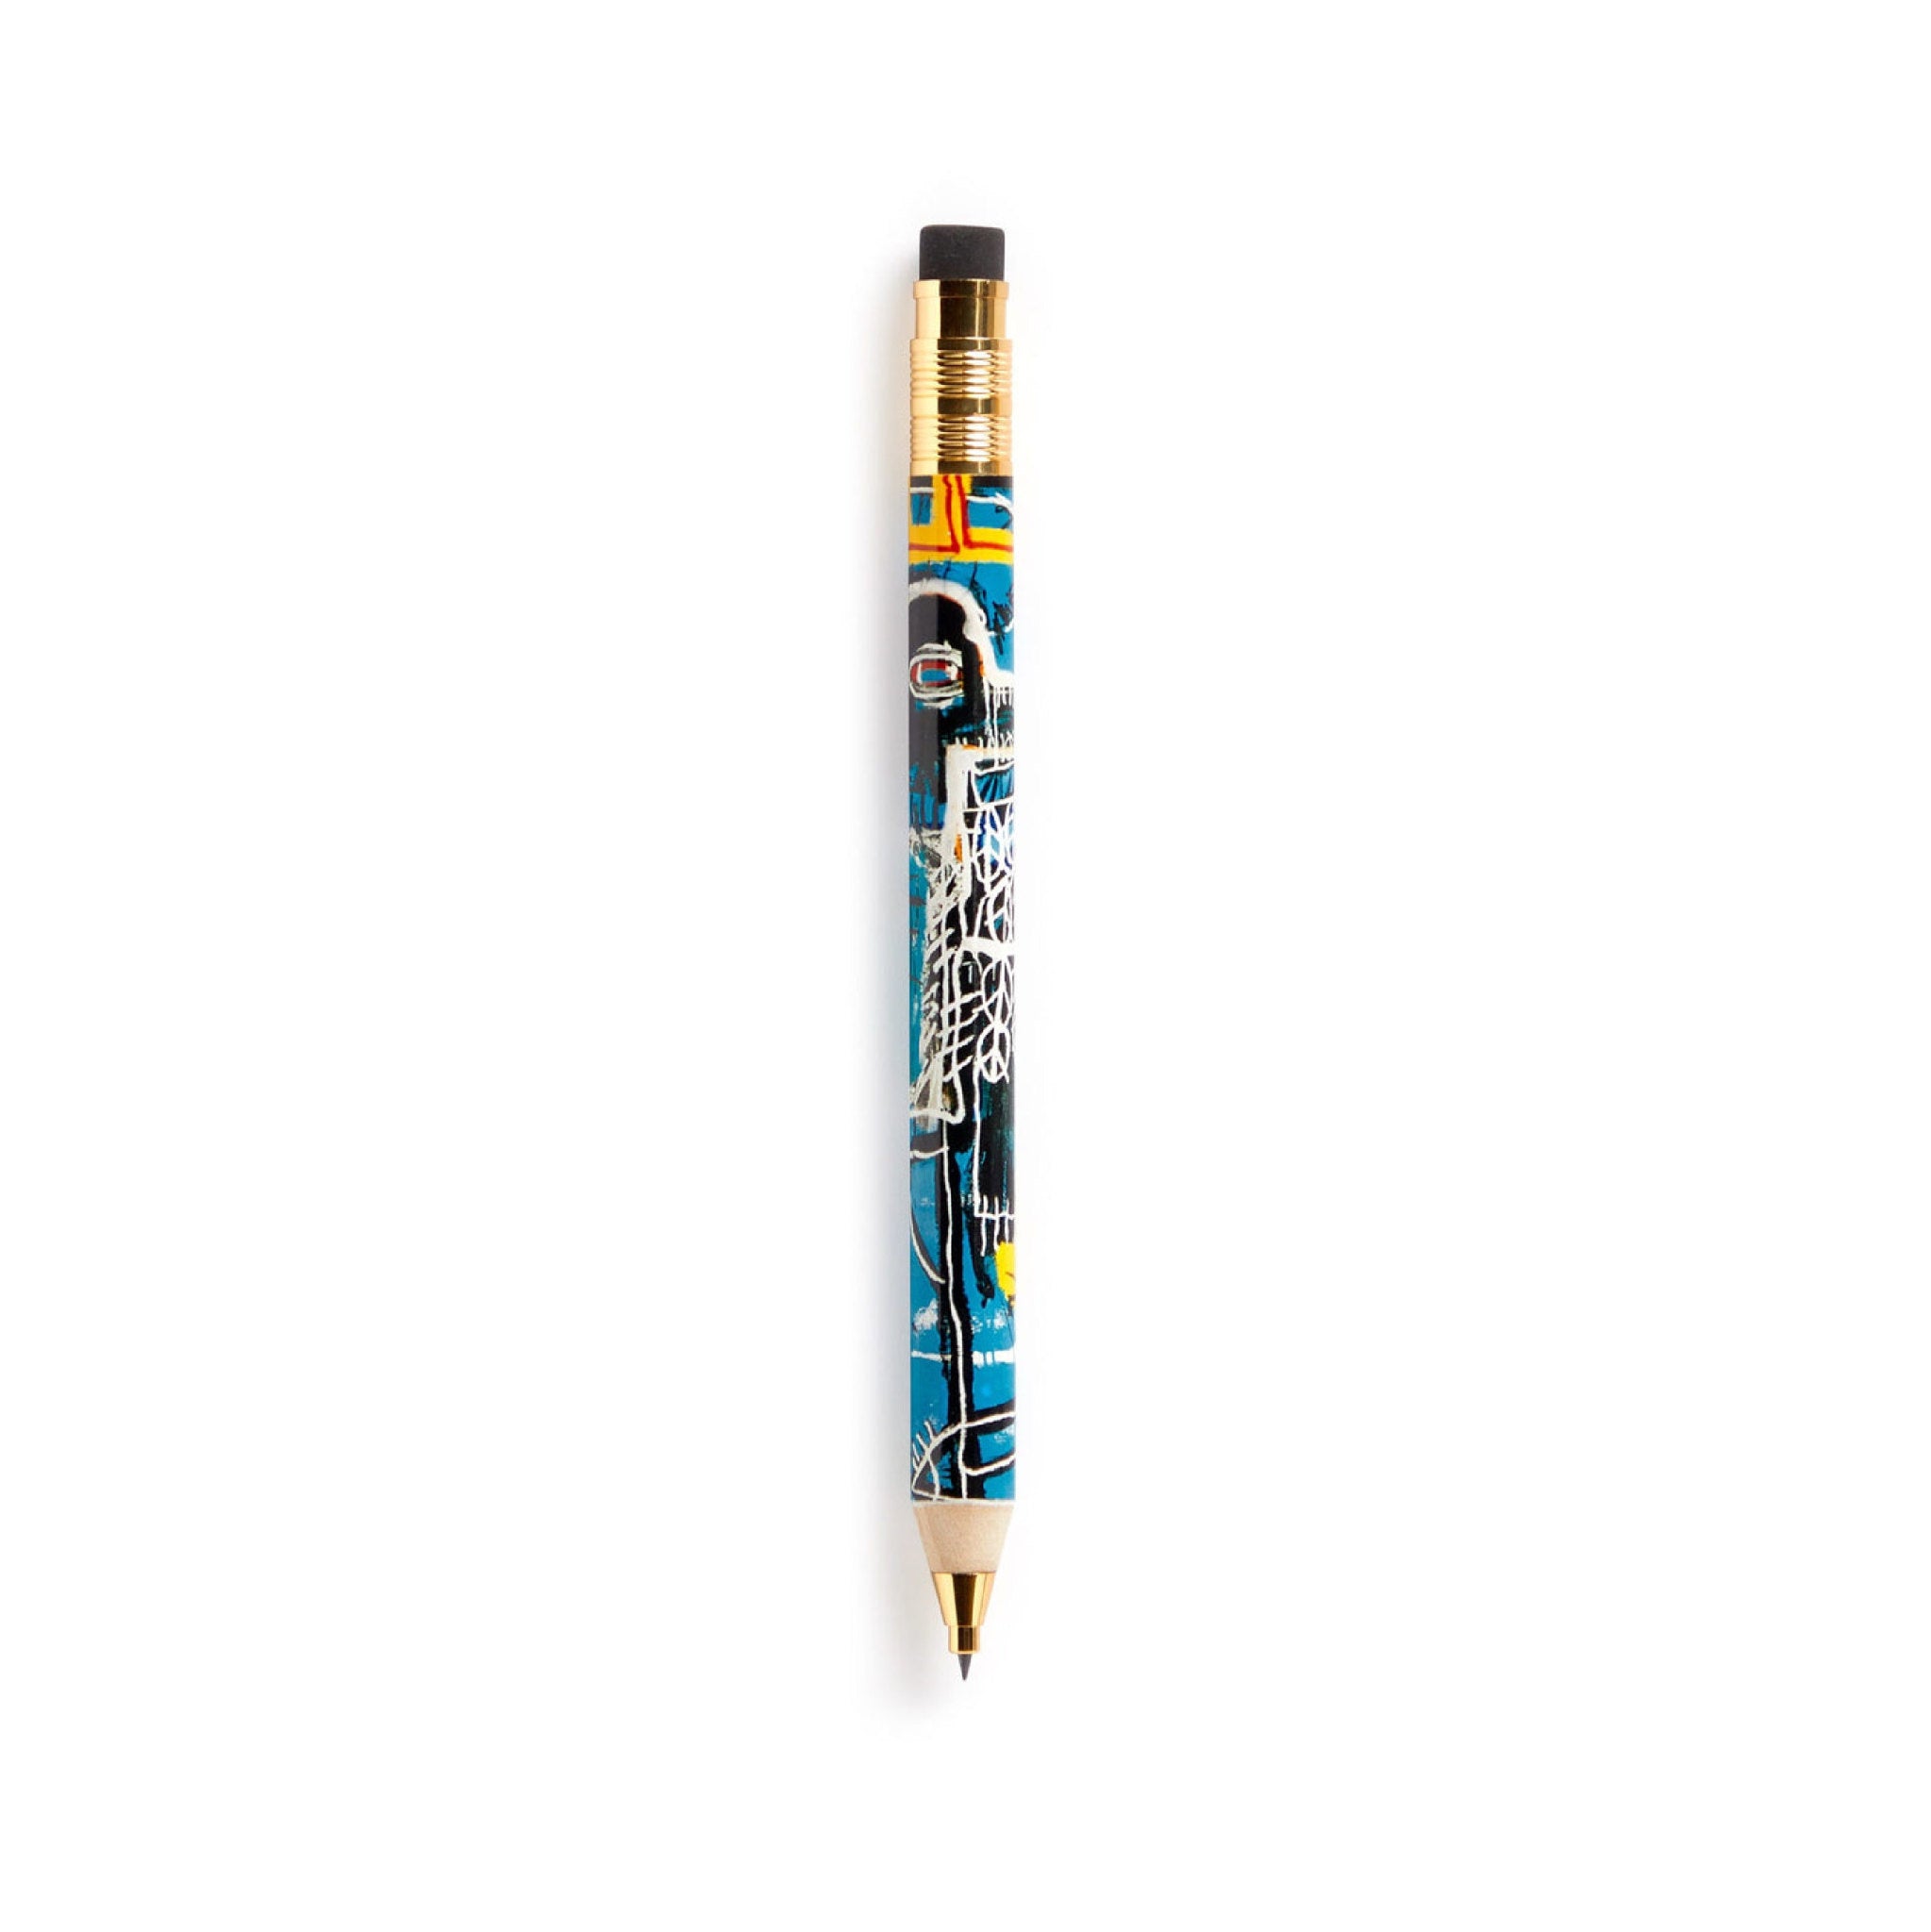 Basquiat Bird on Money Mechanical Pencil - Wynwood Walls Shop